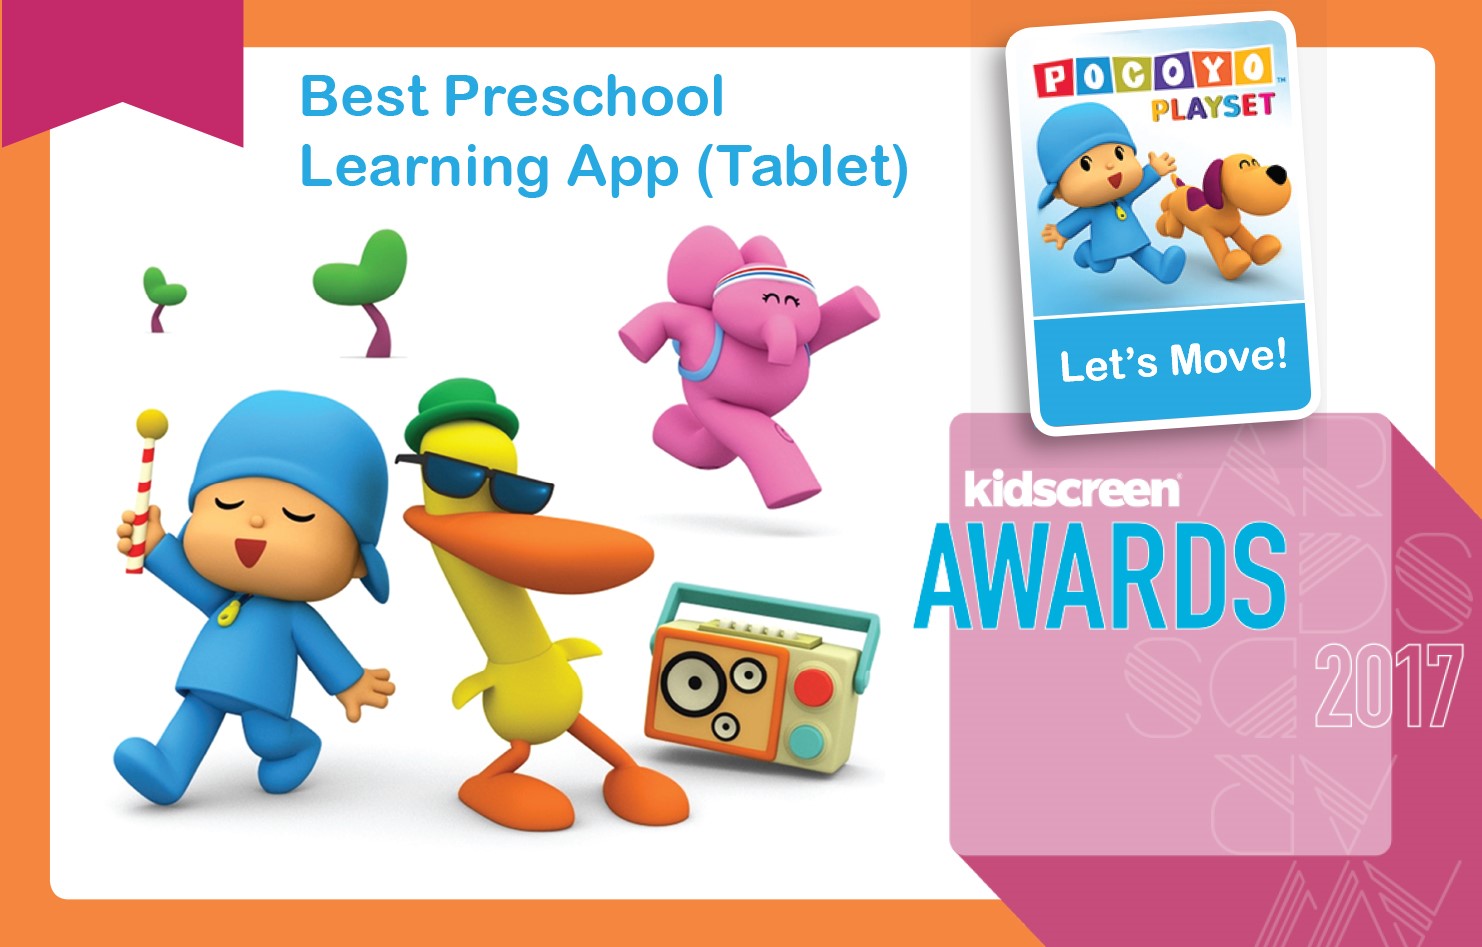 HITN Educational App Wins Kidscreen Award for Best Preschool Children’s Learning App